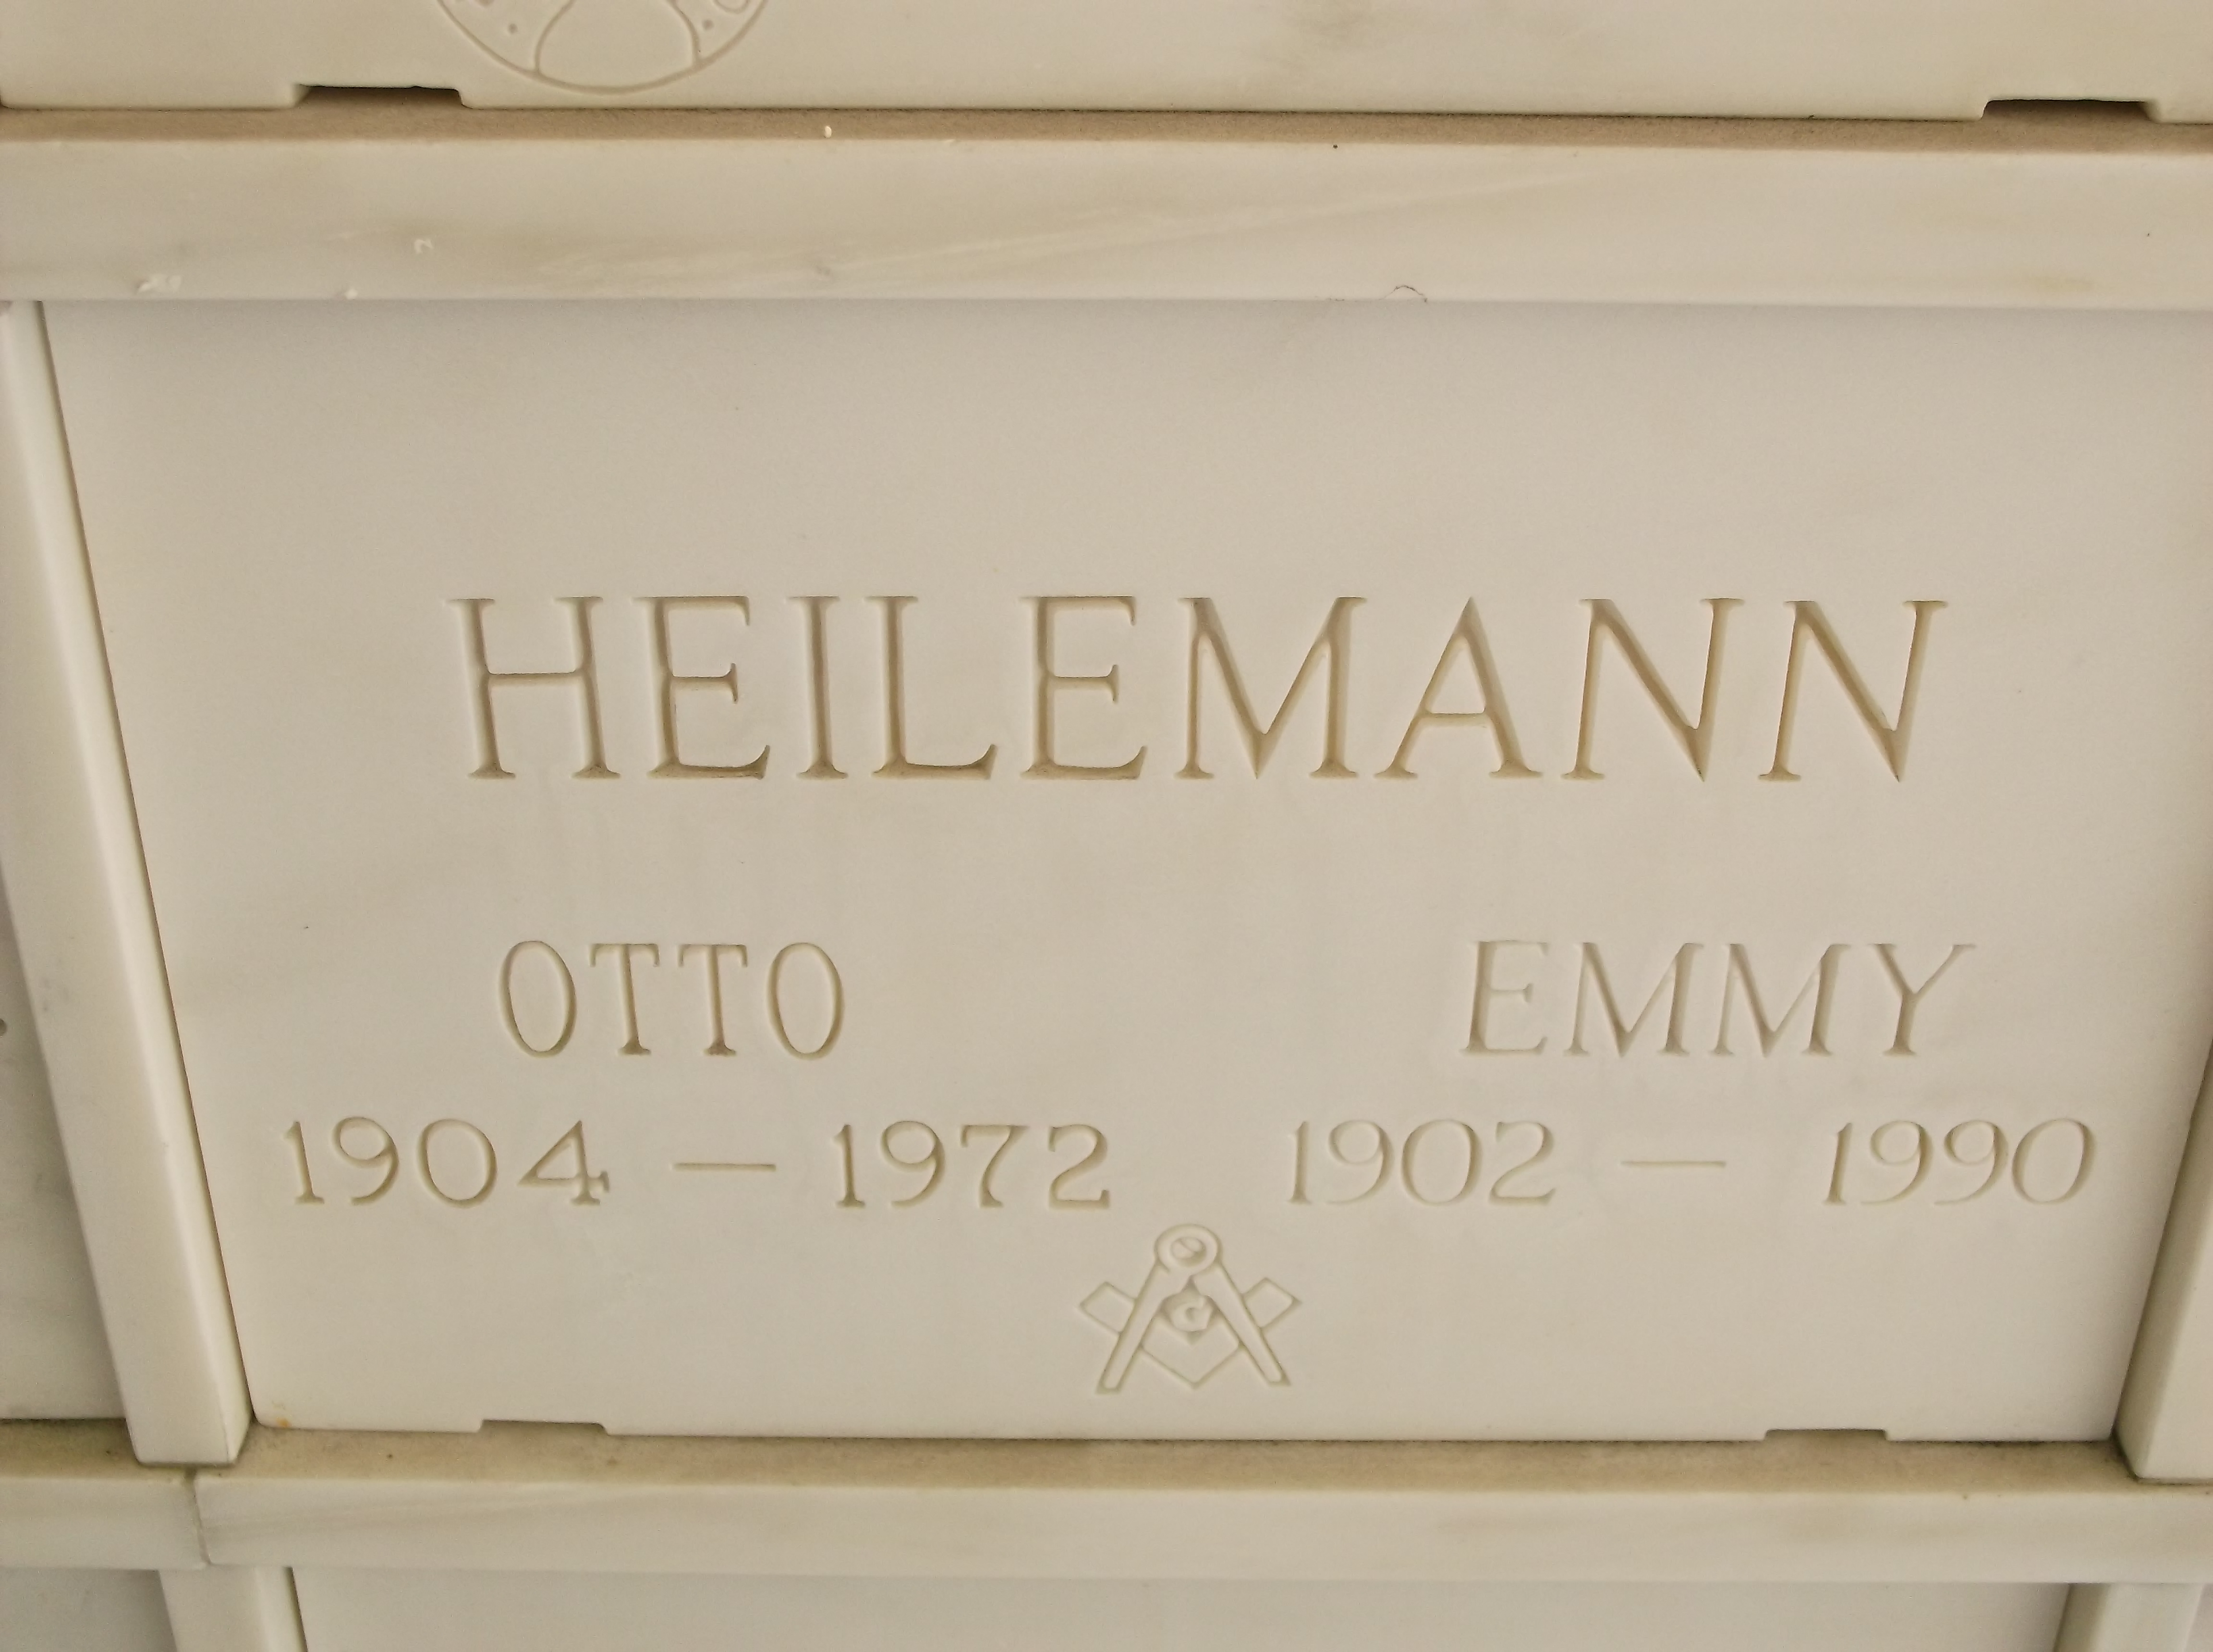 Otto Heilemann